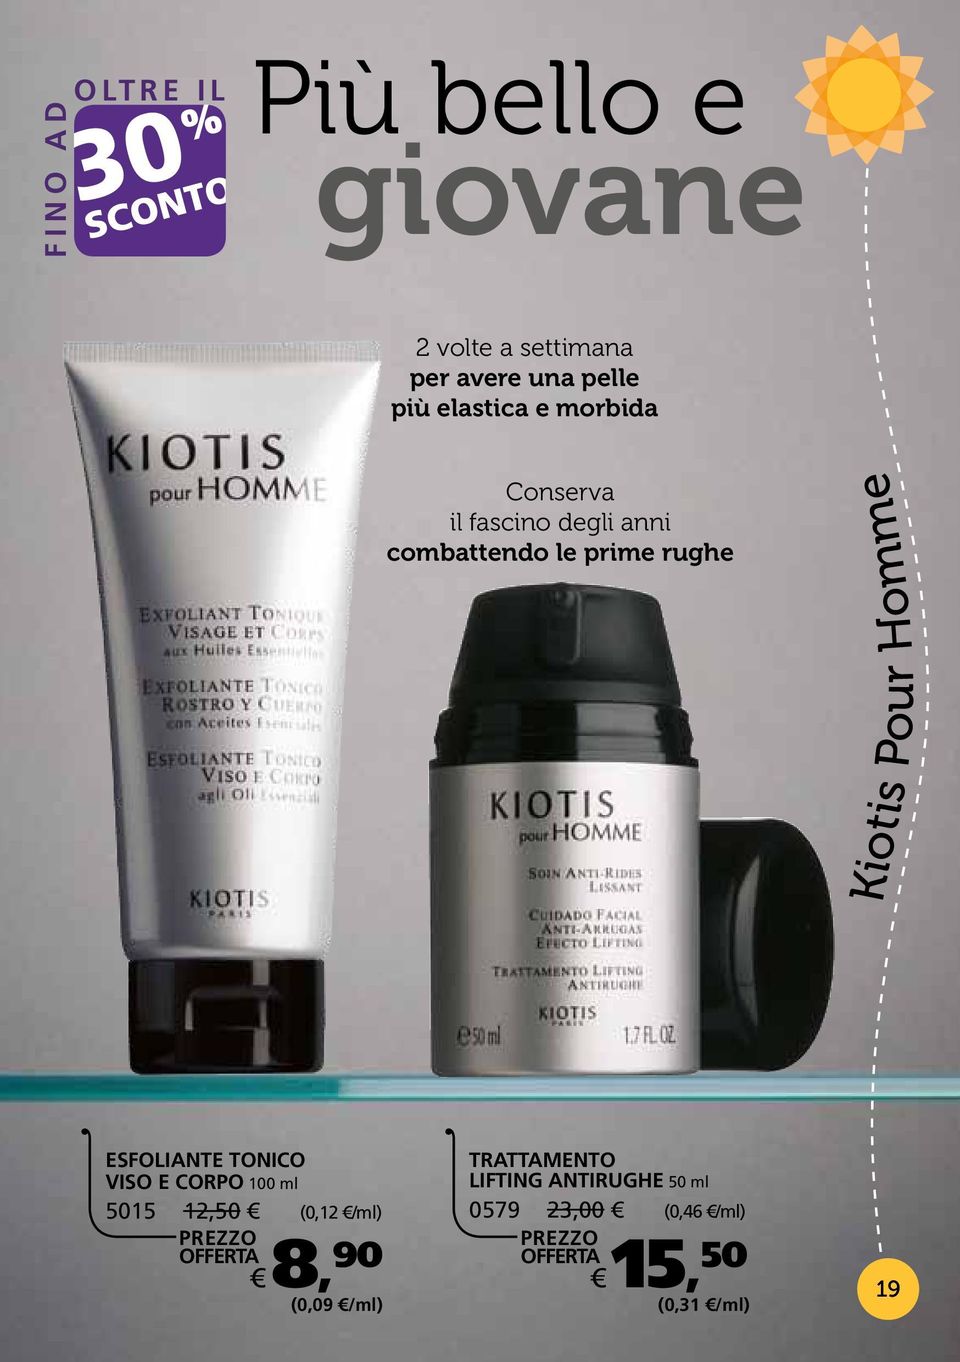 Kiotis Pour Homme Vitalidad esfoliante tonico viso e corpo 100 ml 5015 12,50 (0,12